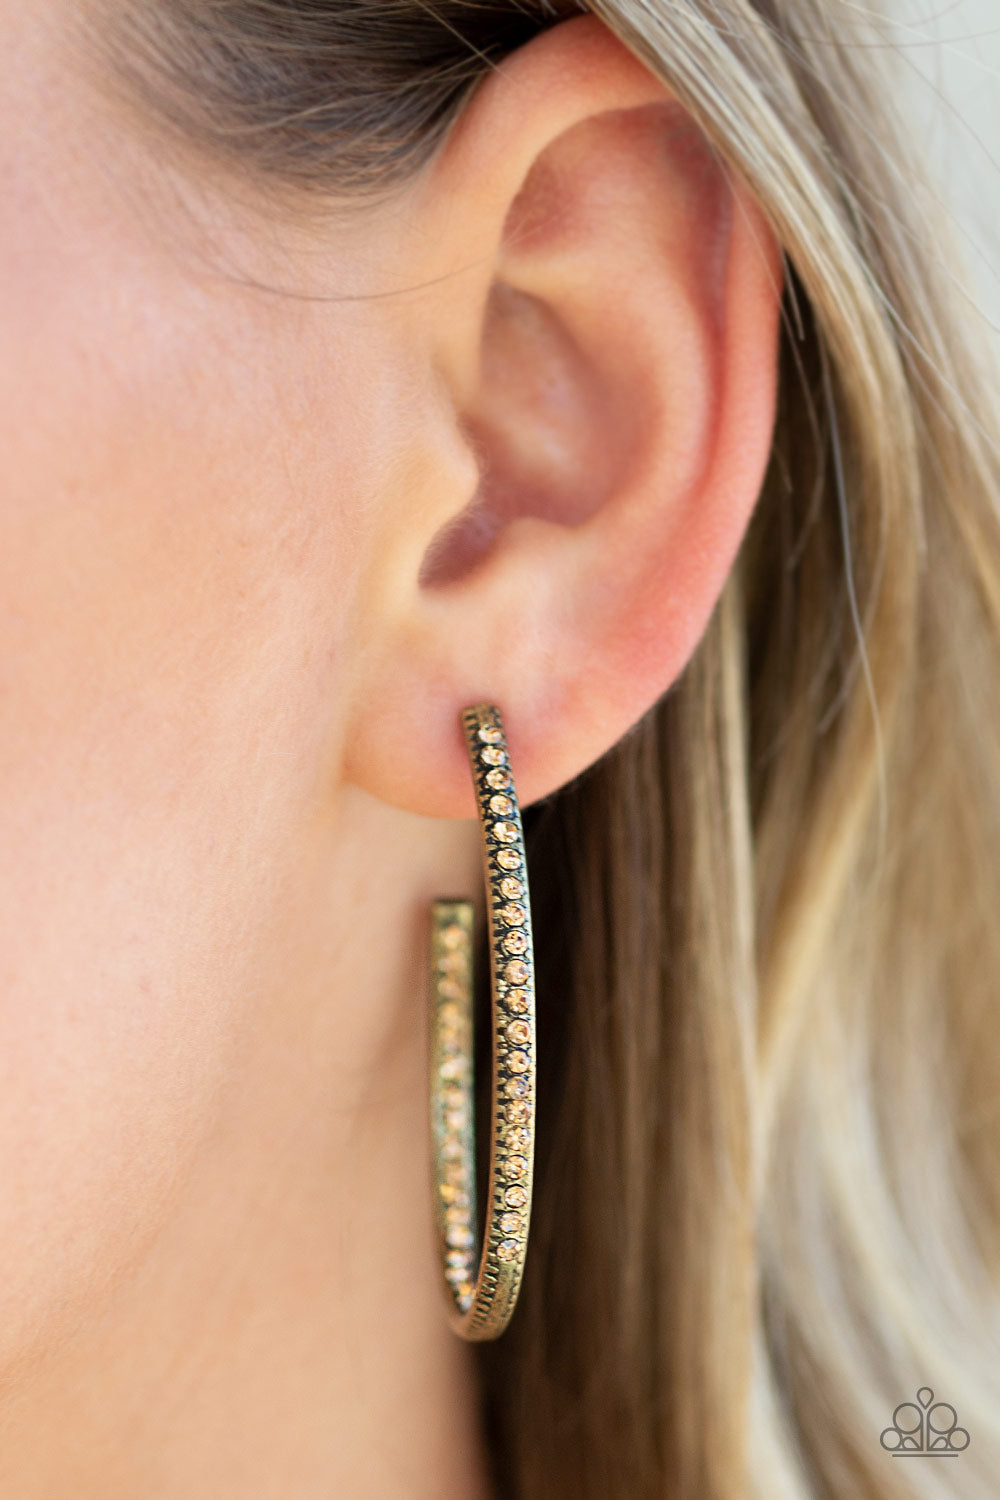 Globetrotting Glitter Brass Hoop Earrings - Daria's Blings N Things